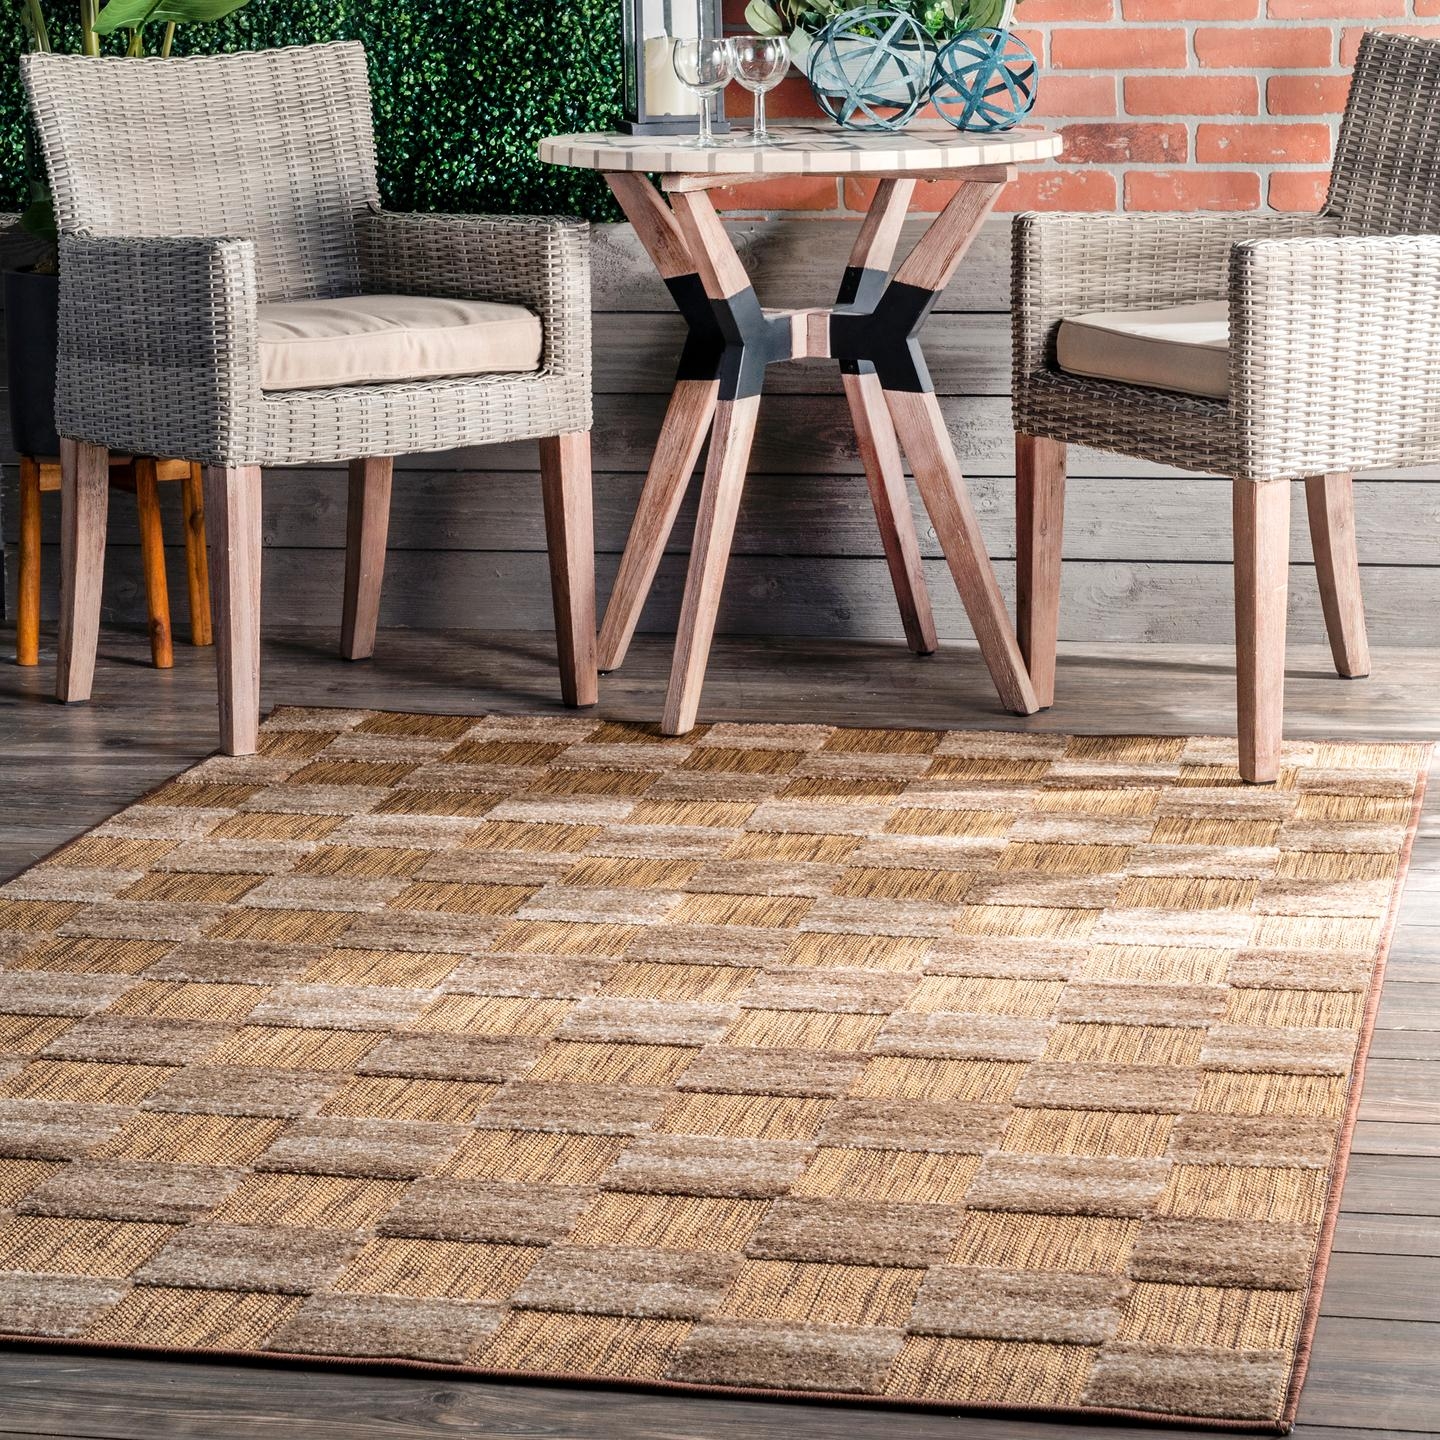 Mckinley Textured Tiles Indoor/Outdoor Area Rug - Image 0